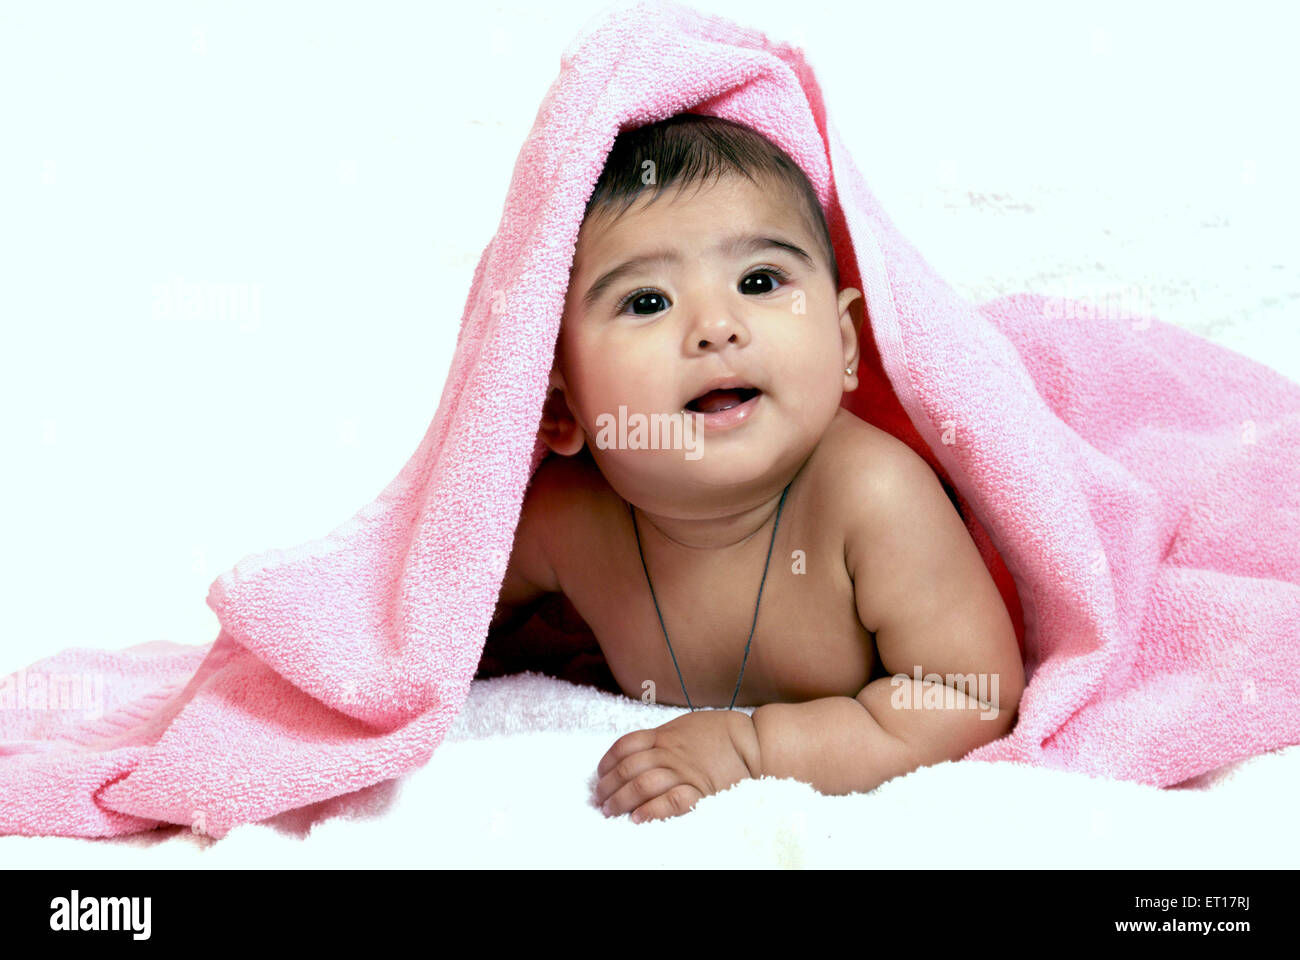 Indische baby Junge Kind Hals Amulett Kopf mit rosa Handtuch liegend auf Bauch Magen suchen auf weißem Hintergrund Herr Nr. 364-Rmm 178217 abgedeckt Stockfoto